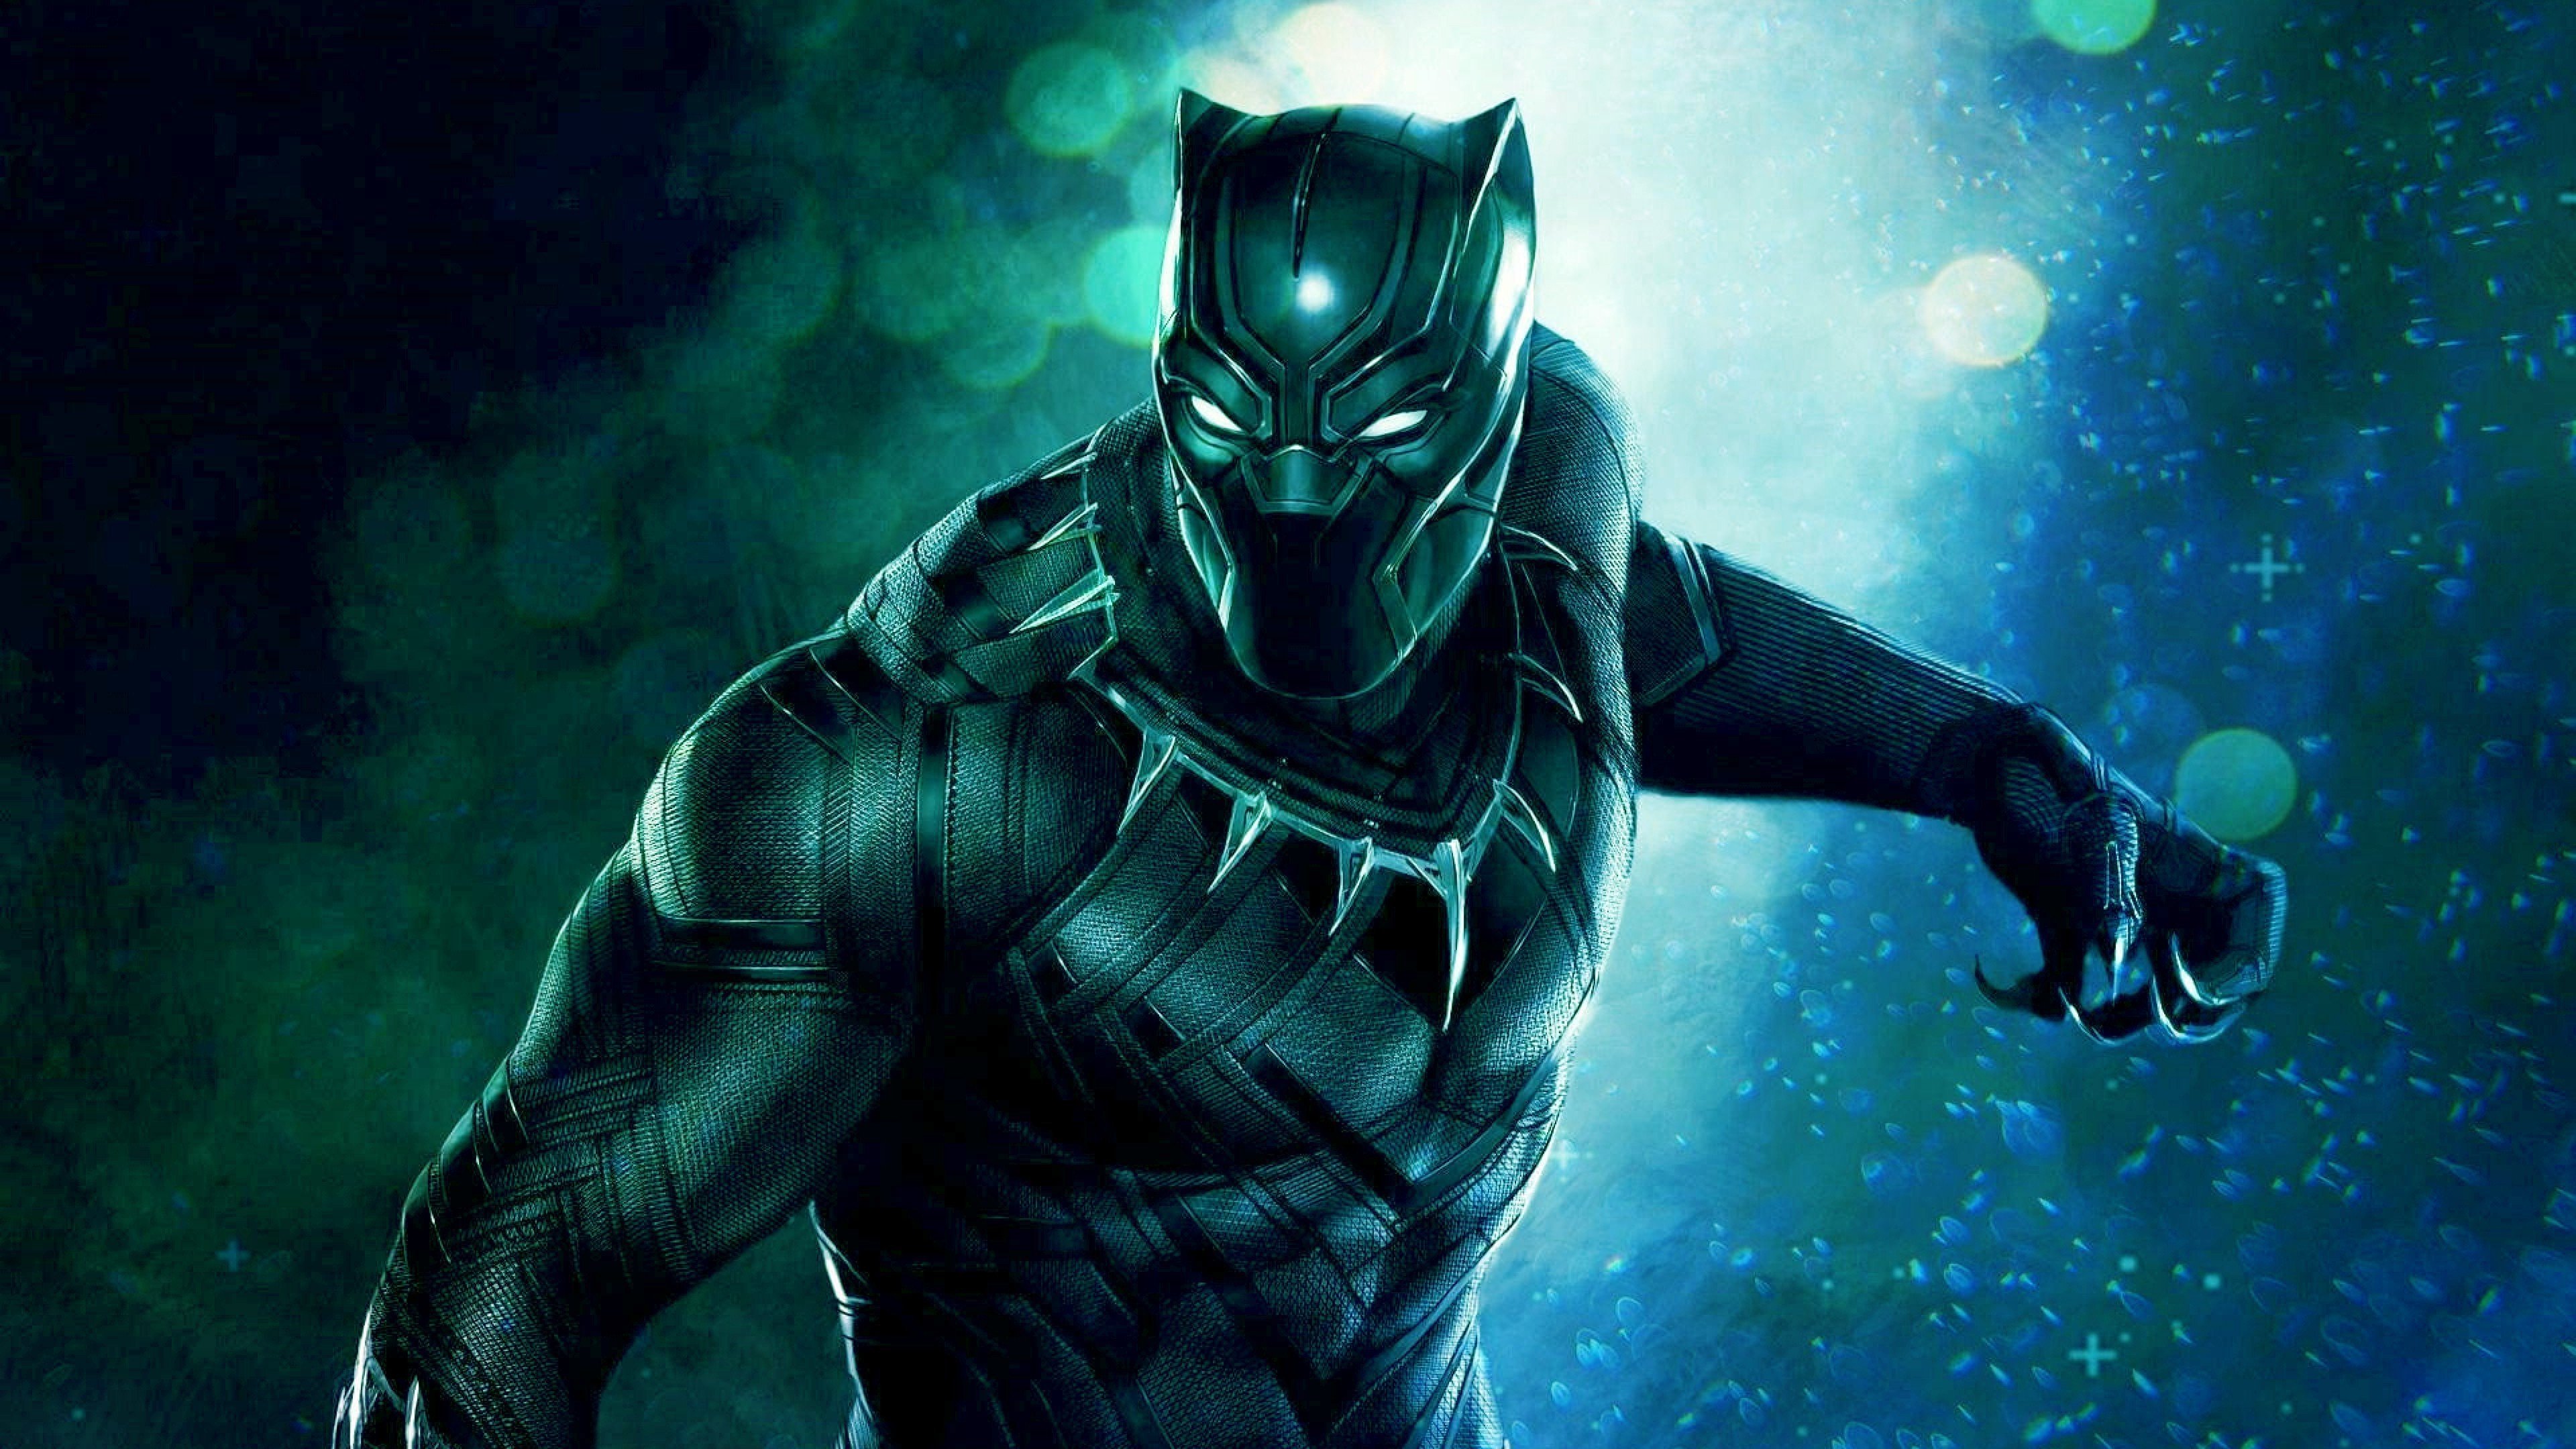 4k Image Of Black Panther Superhero Panther